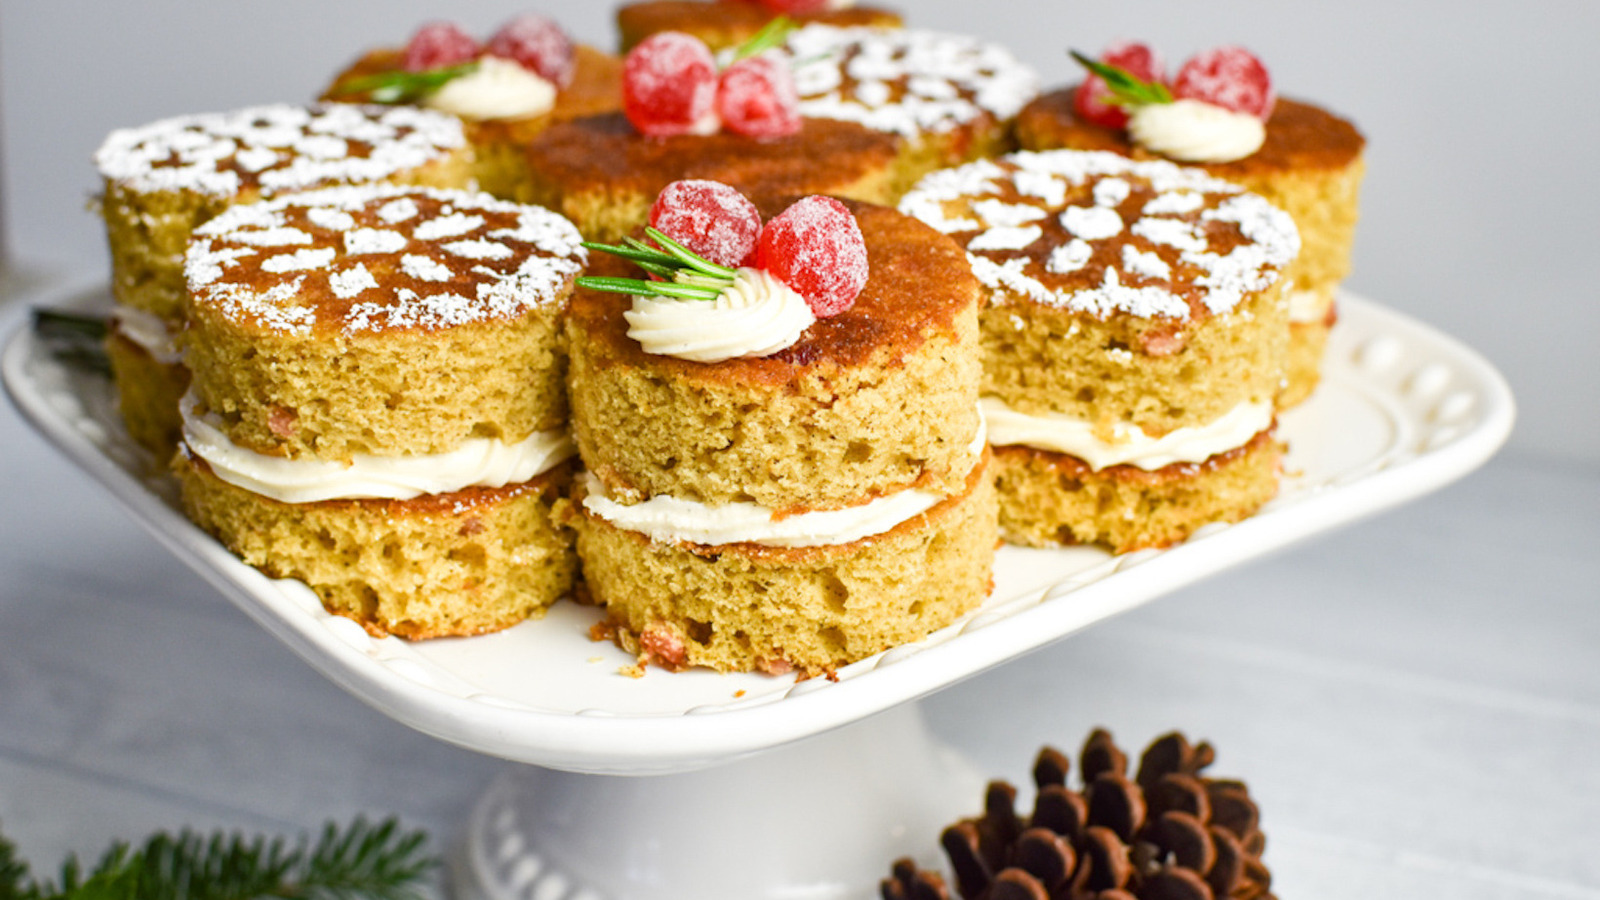 Down Under Christmas cake - Recipes - delicious.com.au